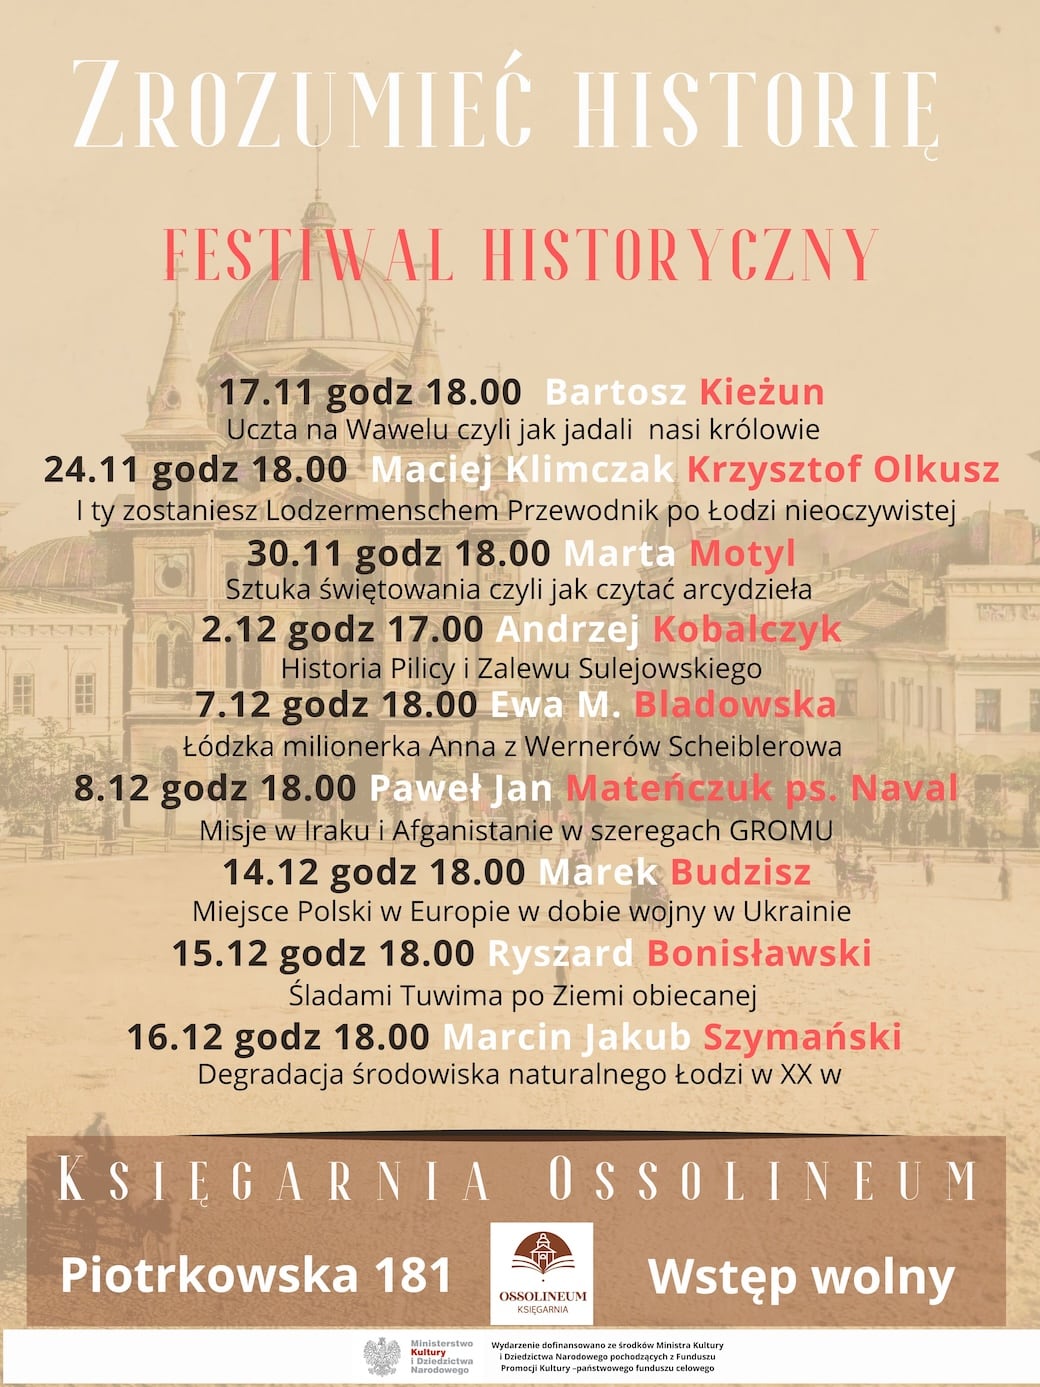 Zrozumieć historię - festiwal historyczny